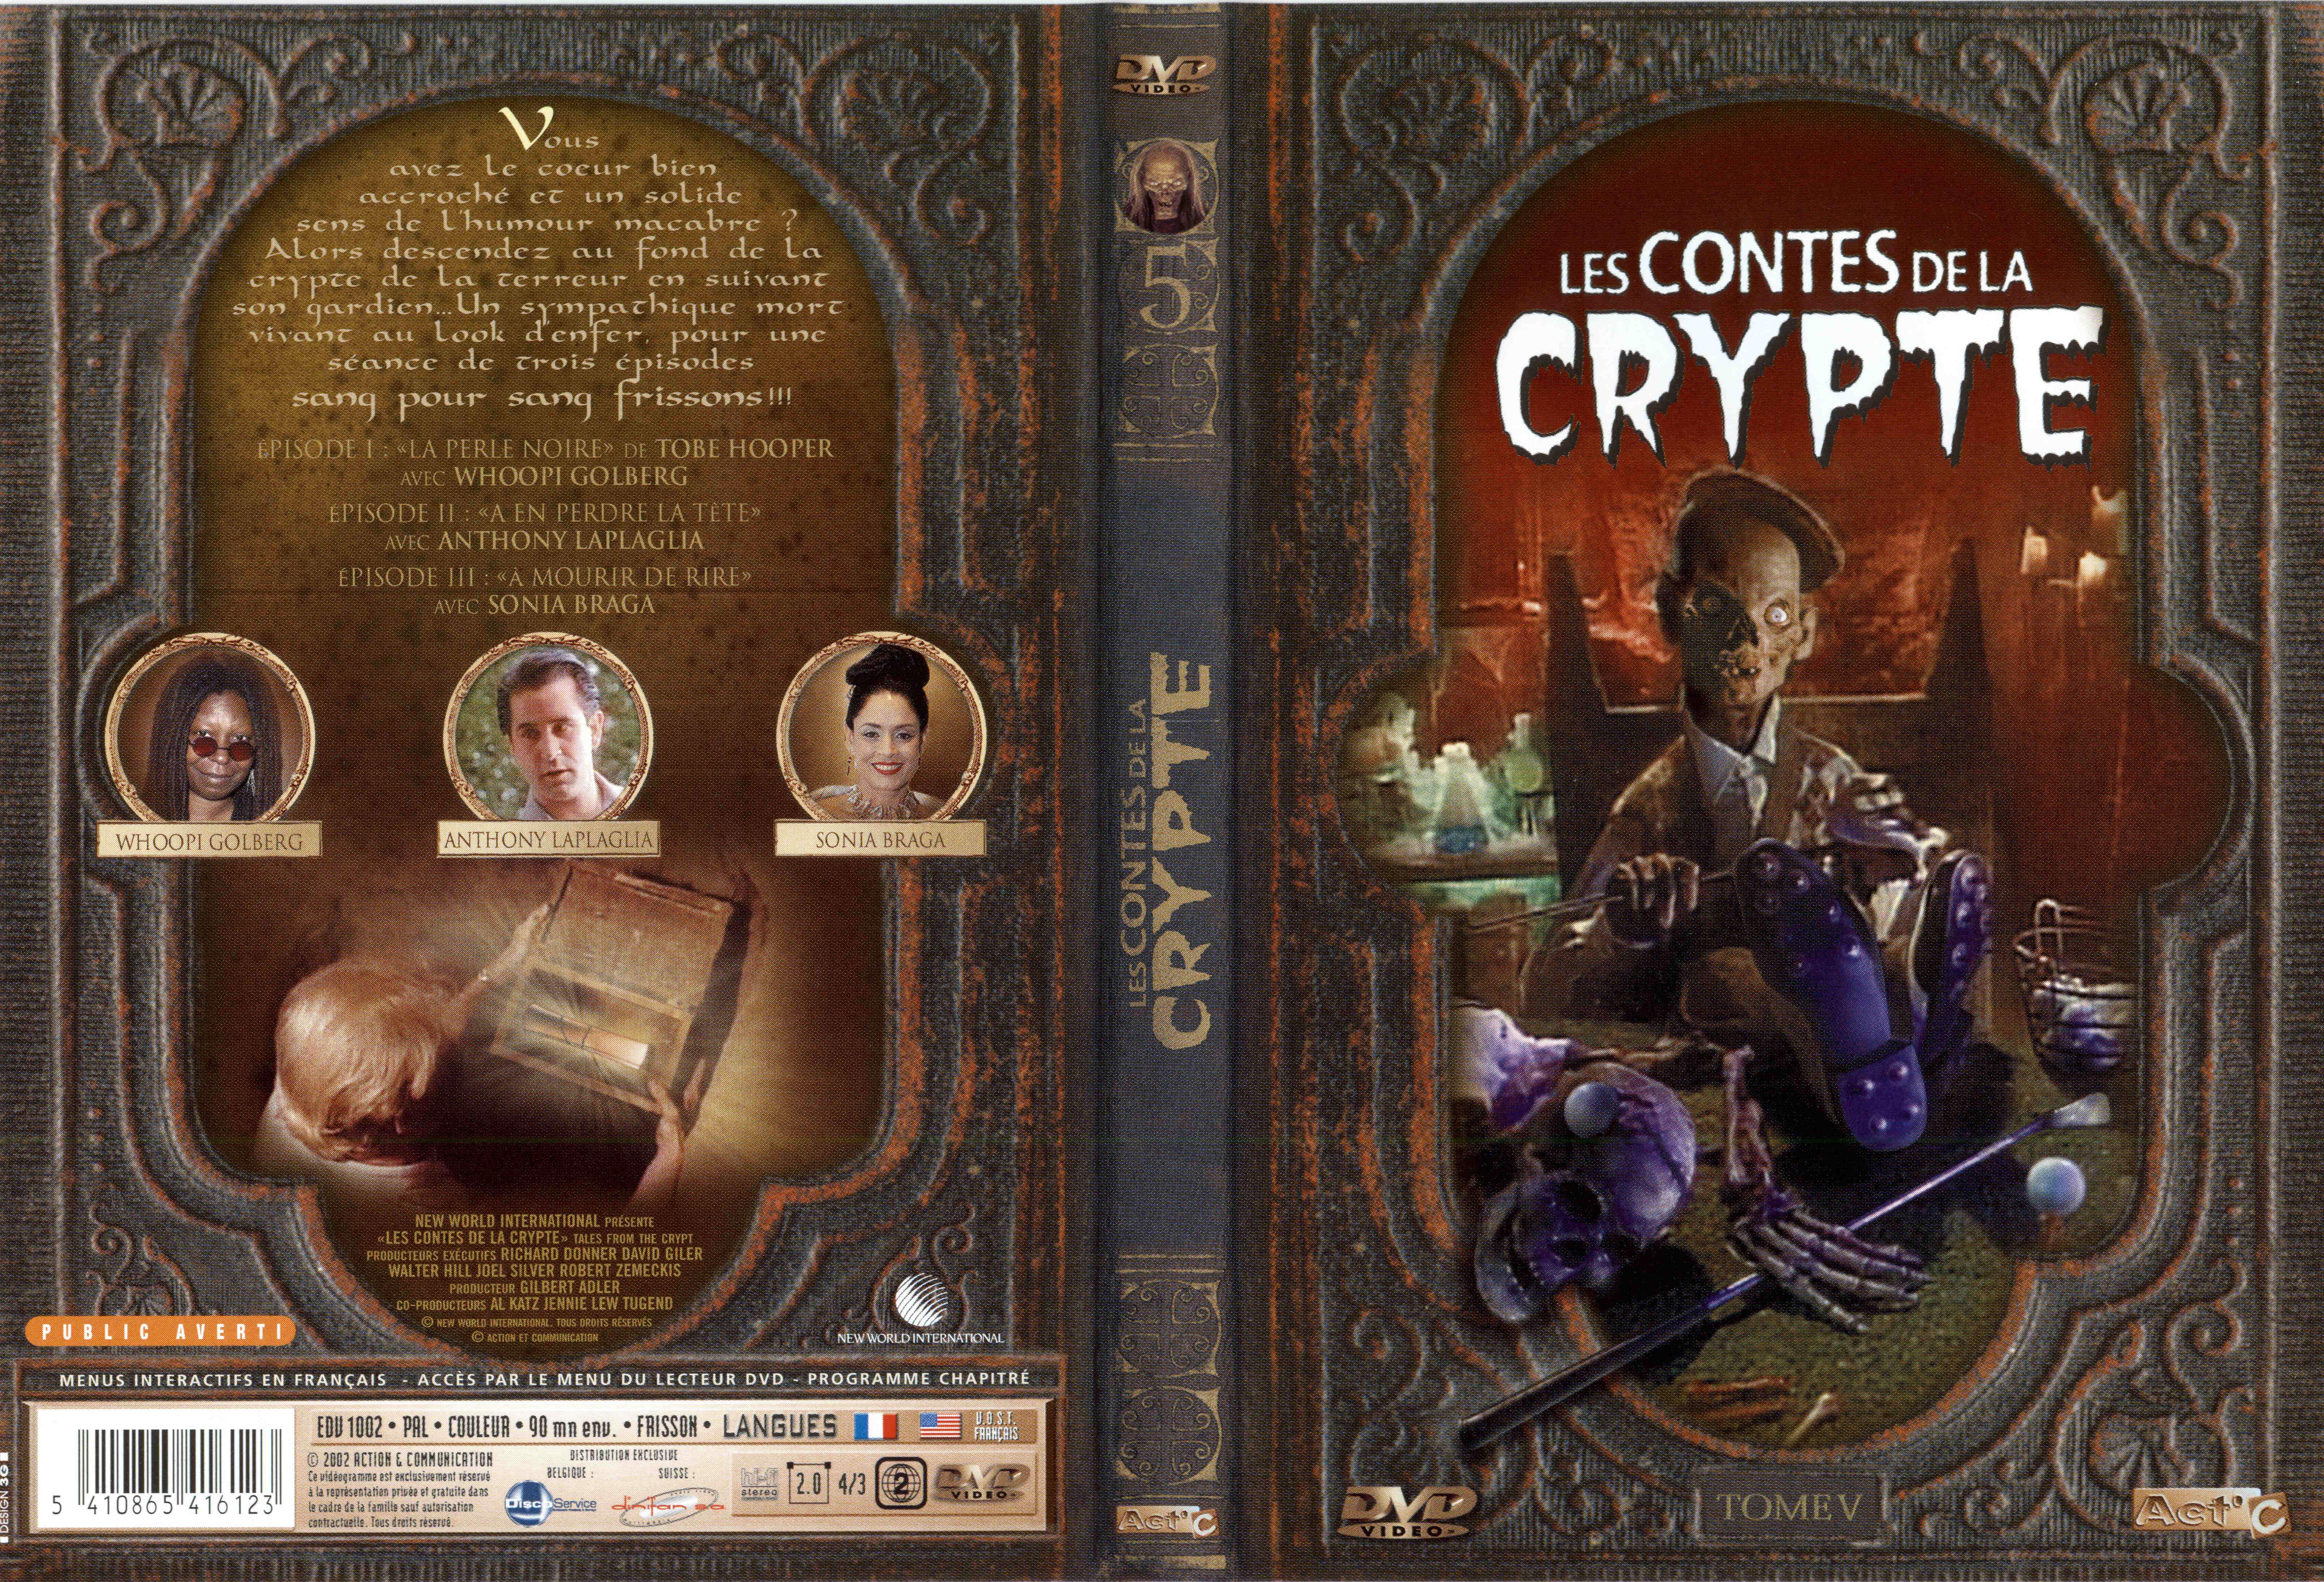 Jaquette DVD Les contes de la crypte vol 05 v2